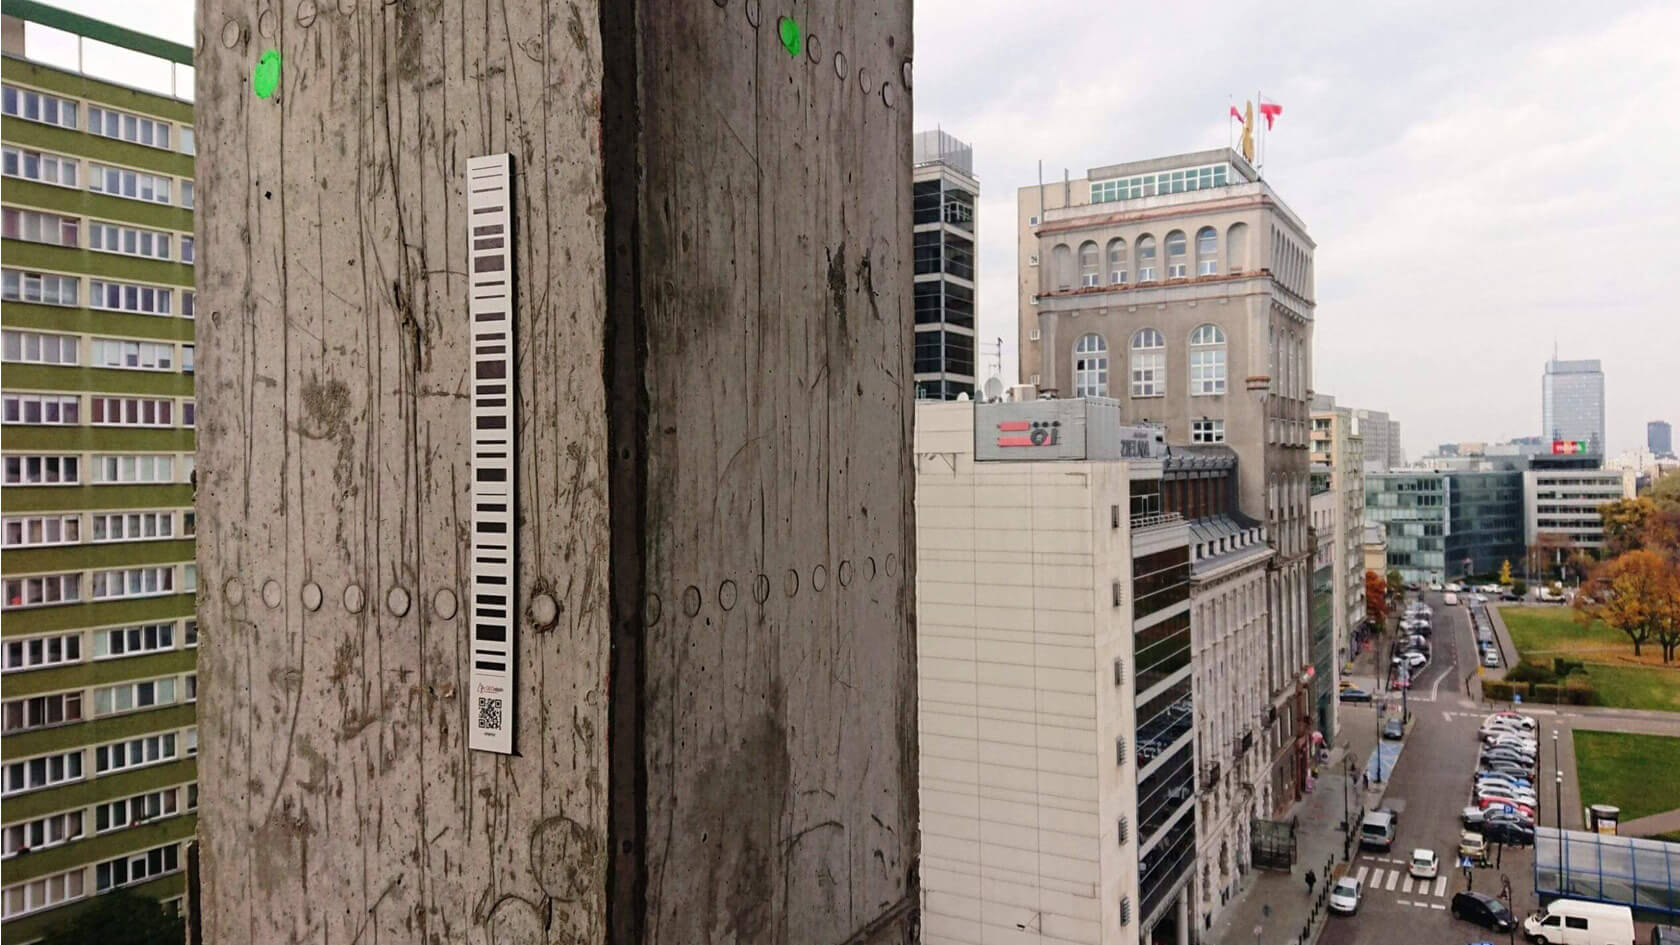  Central Point, monitoring automatyczny – widok na pryzmat pomiarowy oraz budynek Pasty